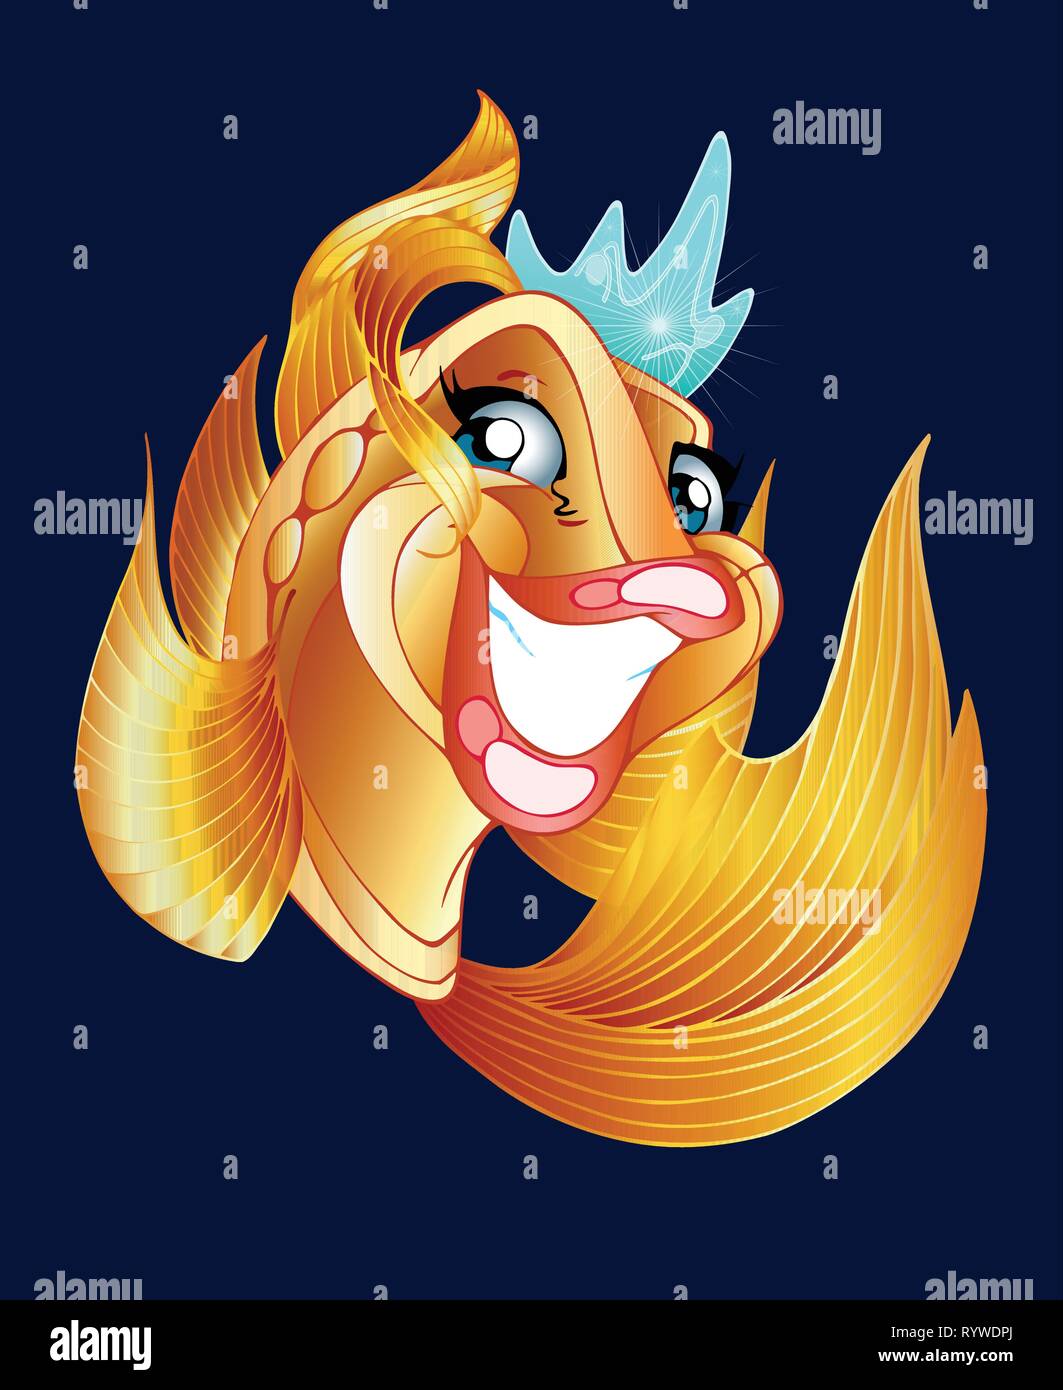 L'illustration montre un fantastique, fun, Golden, heureux poissons rouges dans la couronne. En fait l'illustration cartoon style, sur un fond sombre. Illustration de Vecteur